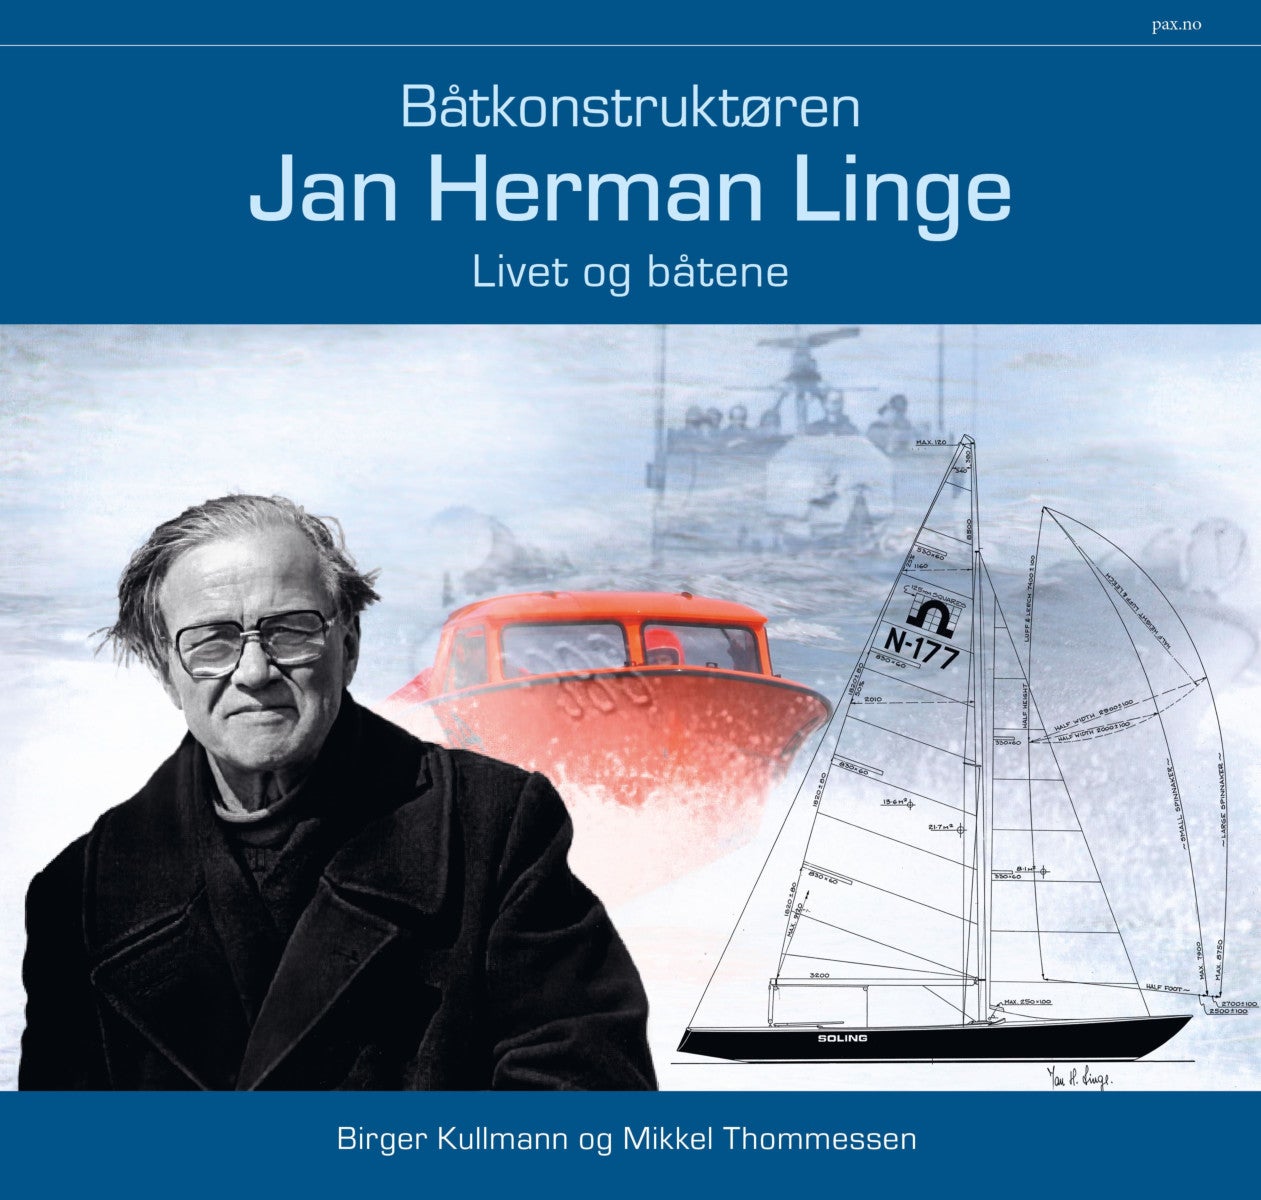 Bilde av Båtkonstruktøren Jan Herman Linge Av Birger Kullmann, Mikkel Thommessen